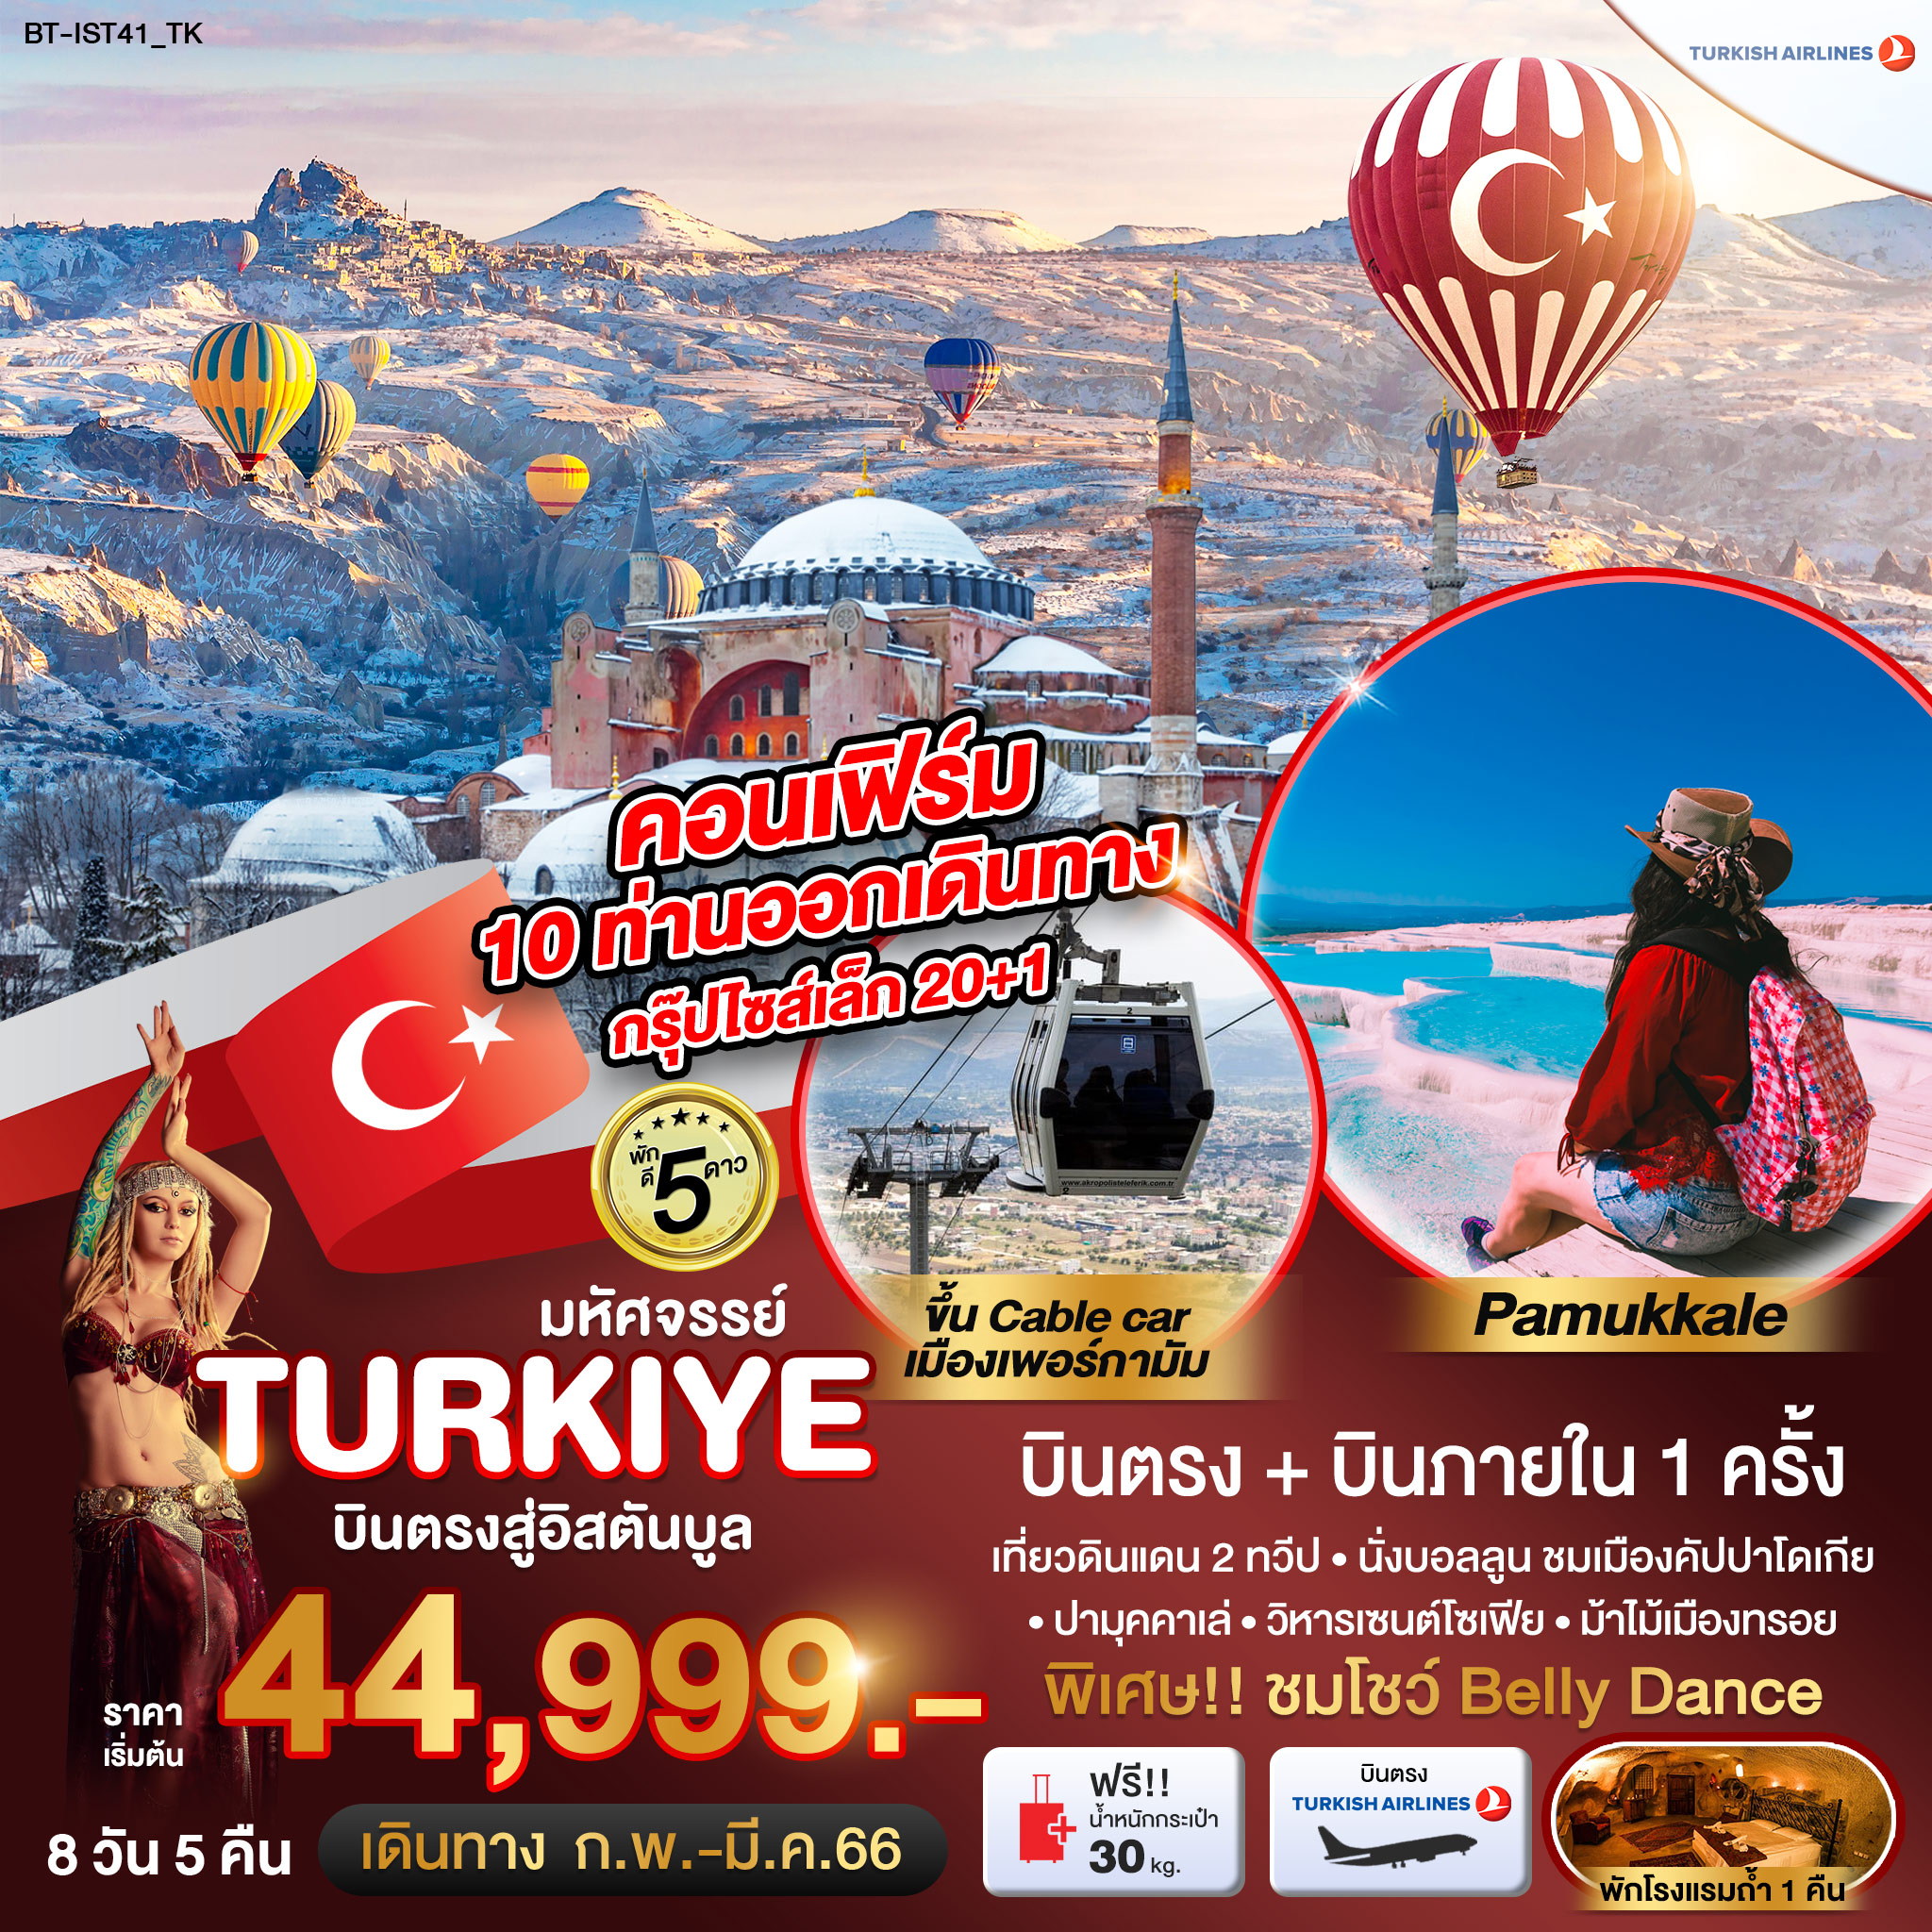 มหัศจรรย์...TURKEY บินภายใน 1 ขา นั่งกระเช้าเพอร์กามัม 8 วัน 5 คืน โดยสายการบิน Turkish Airlines (TK)